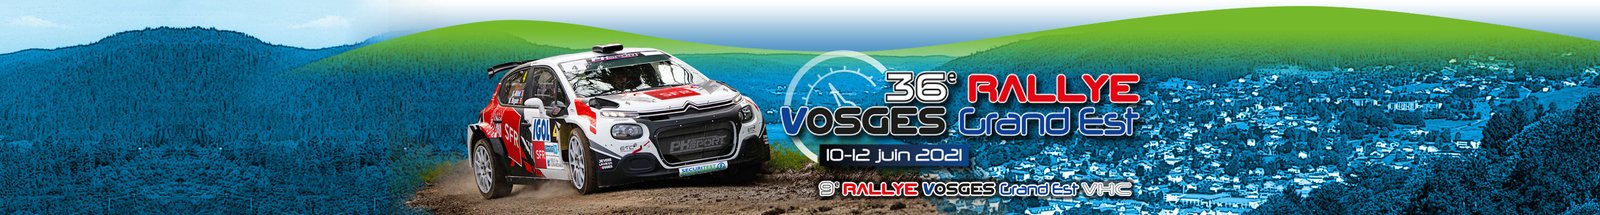 Rallye Vosges grand est 2021 bandeau